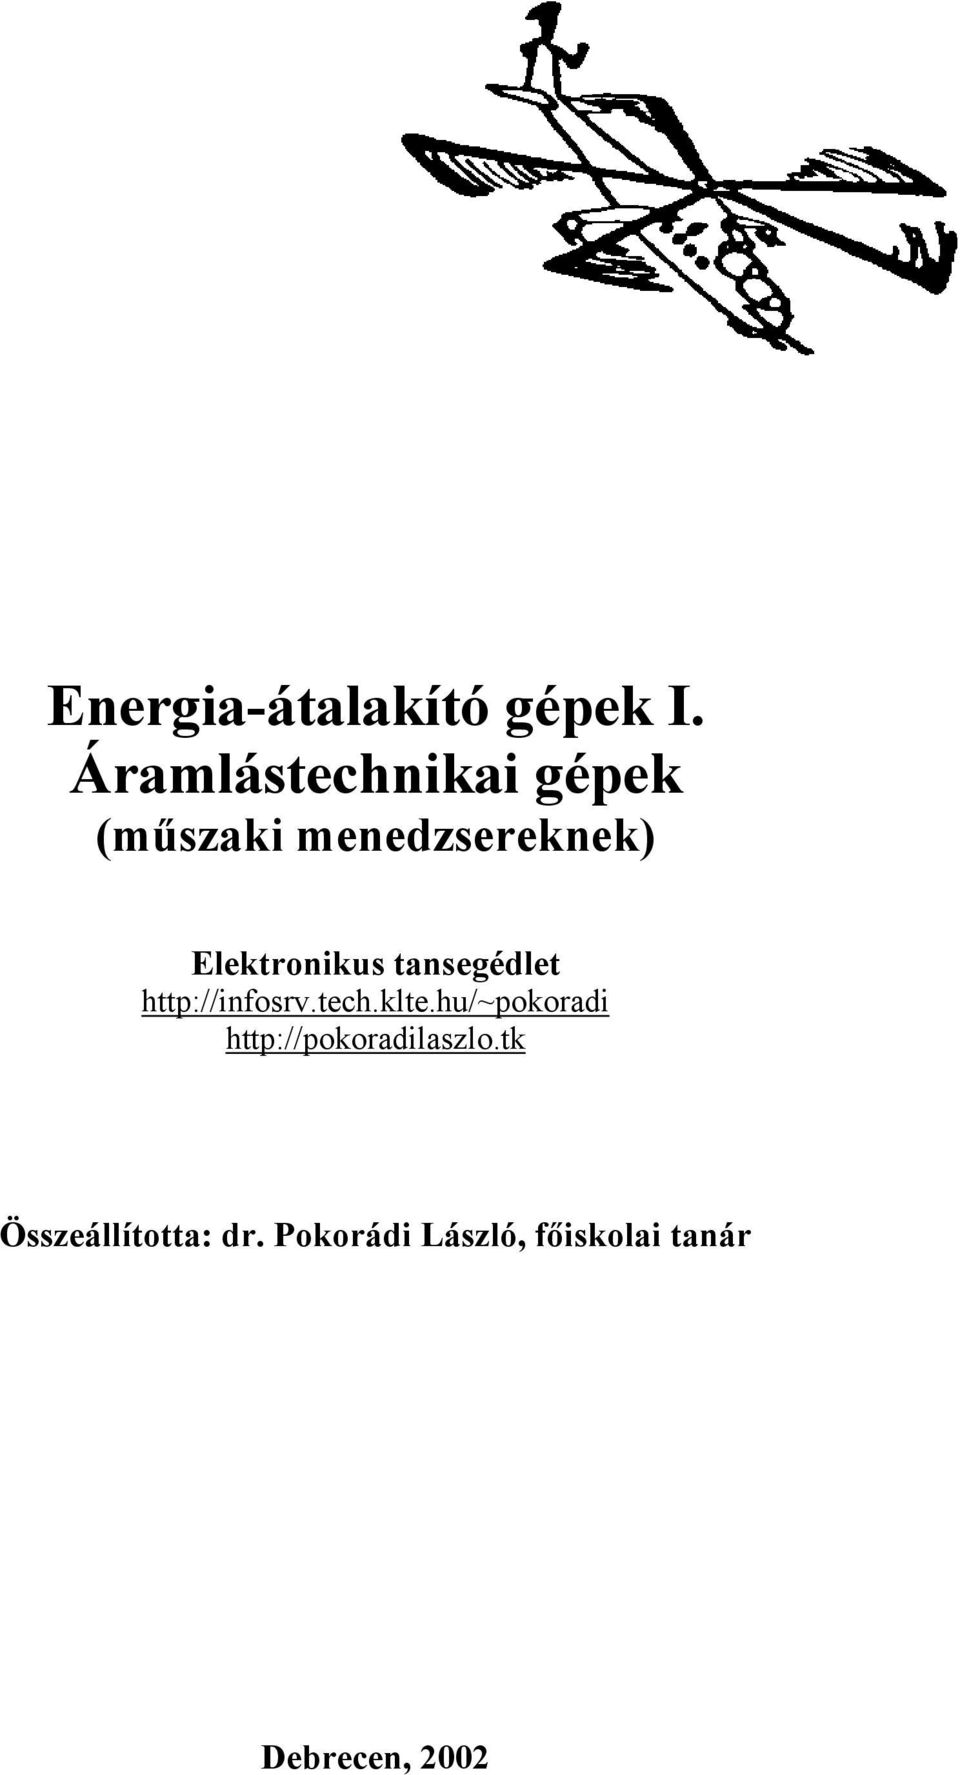 Energia-átalakító gépek I. Áramlástechnikai gépek (műszaki menedzsereknek)  - PDF Free Download